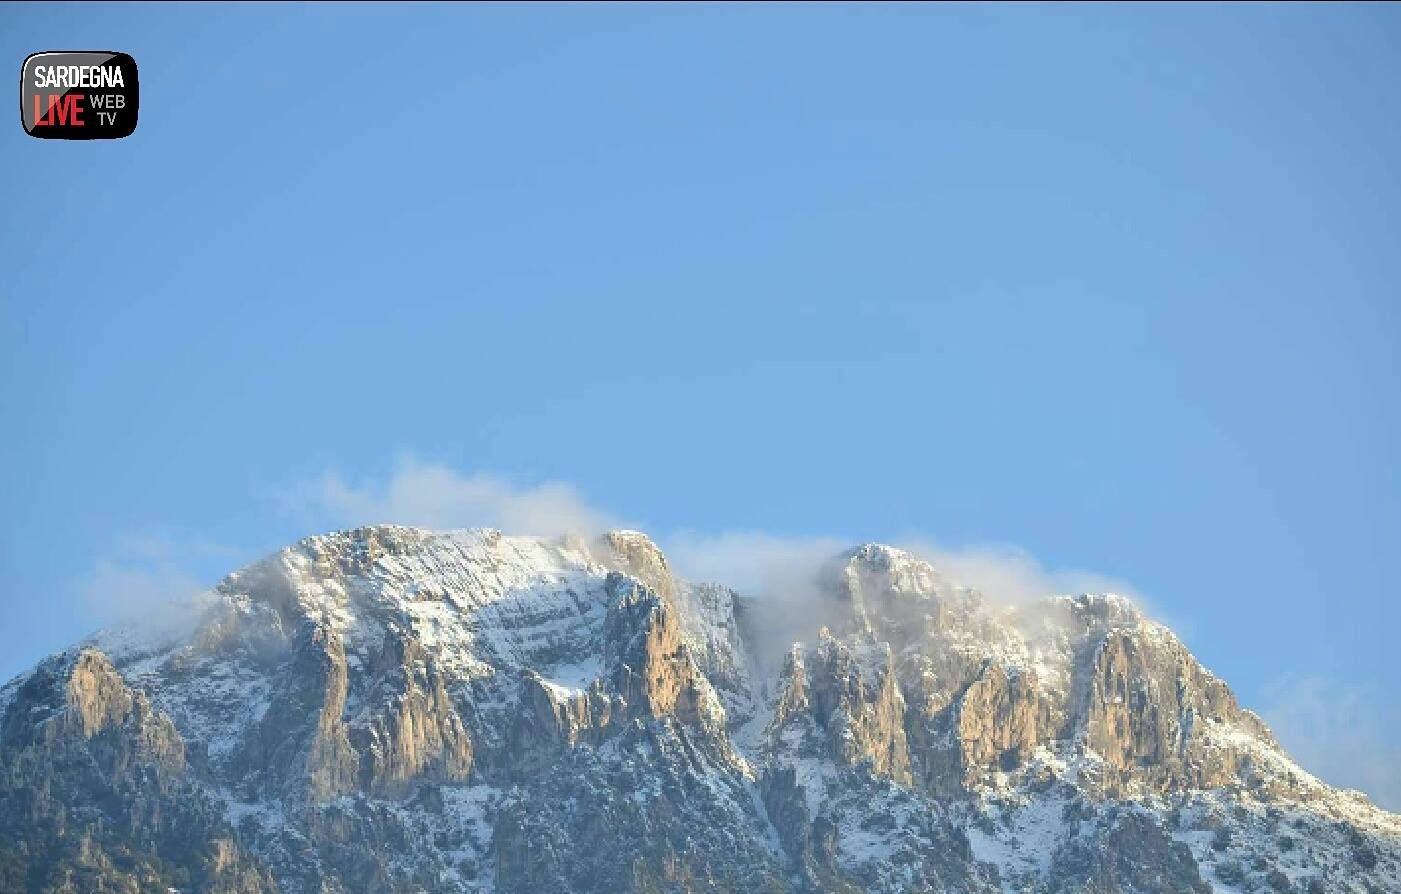 Un'altra giornata di neve. Sul Limbara il manto ha raggiunto 1.20 m, primi fiocchi a Sassari